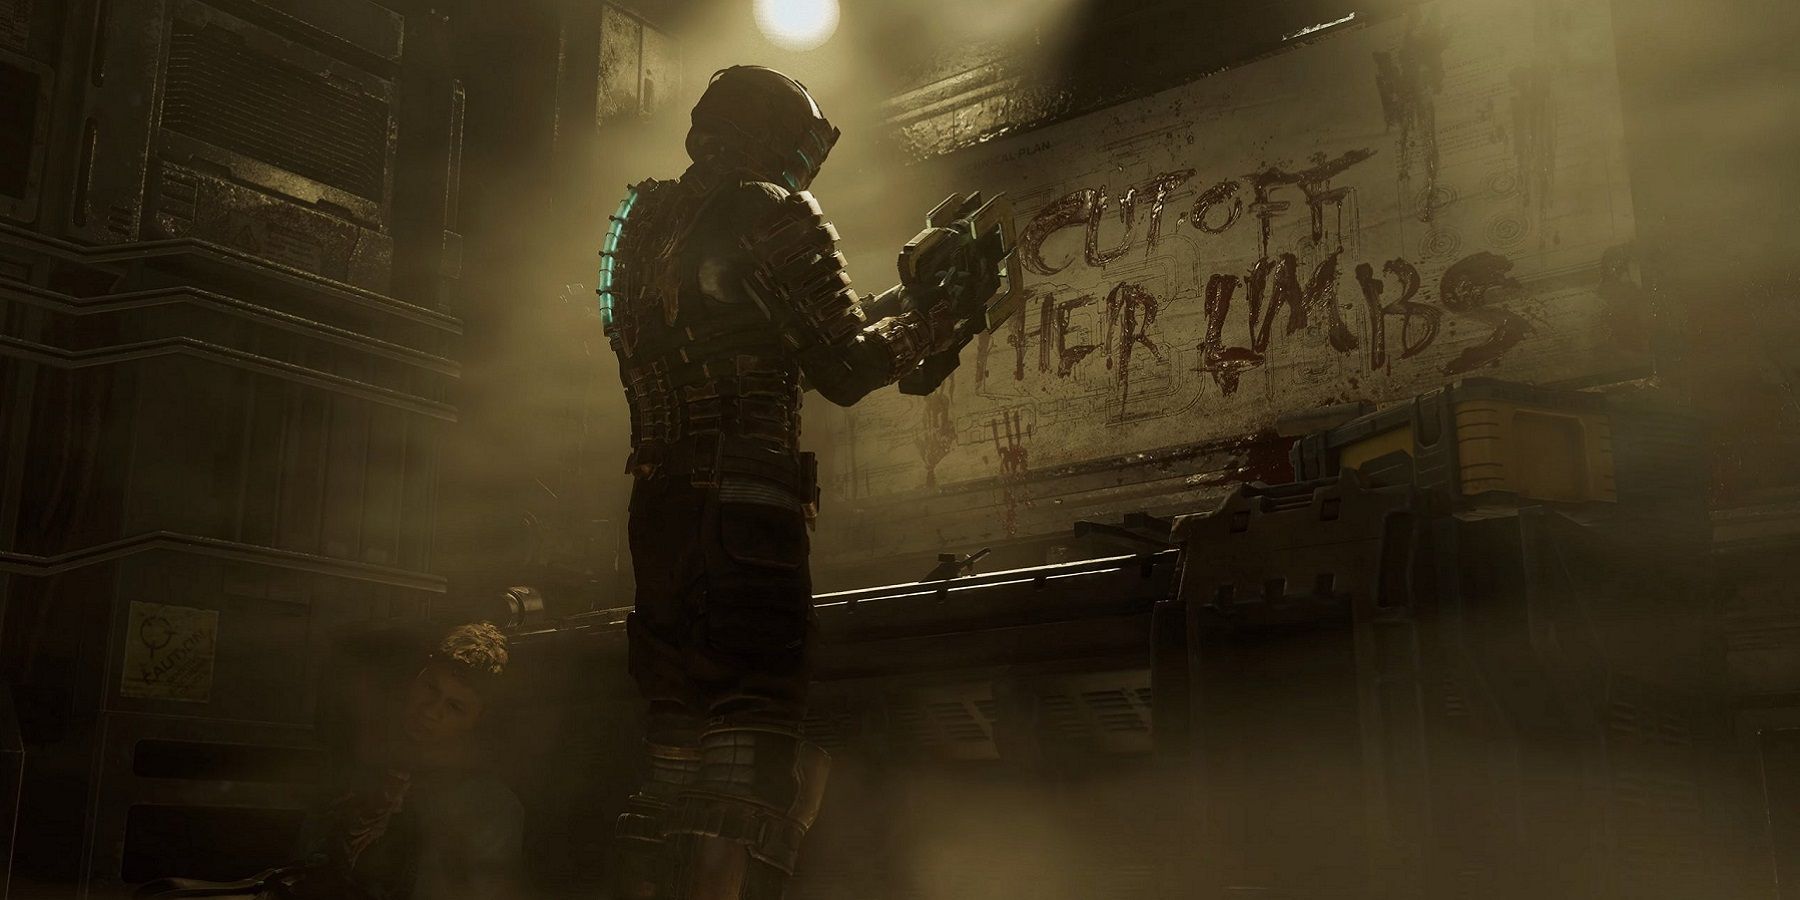 Hình ảnh từ bản làm lại của Dead Space cho thấy Isaac Clarke đứng trước một tấm biển đẫm máu có dòng chữ 